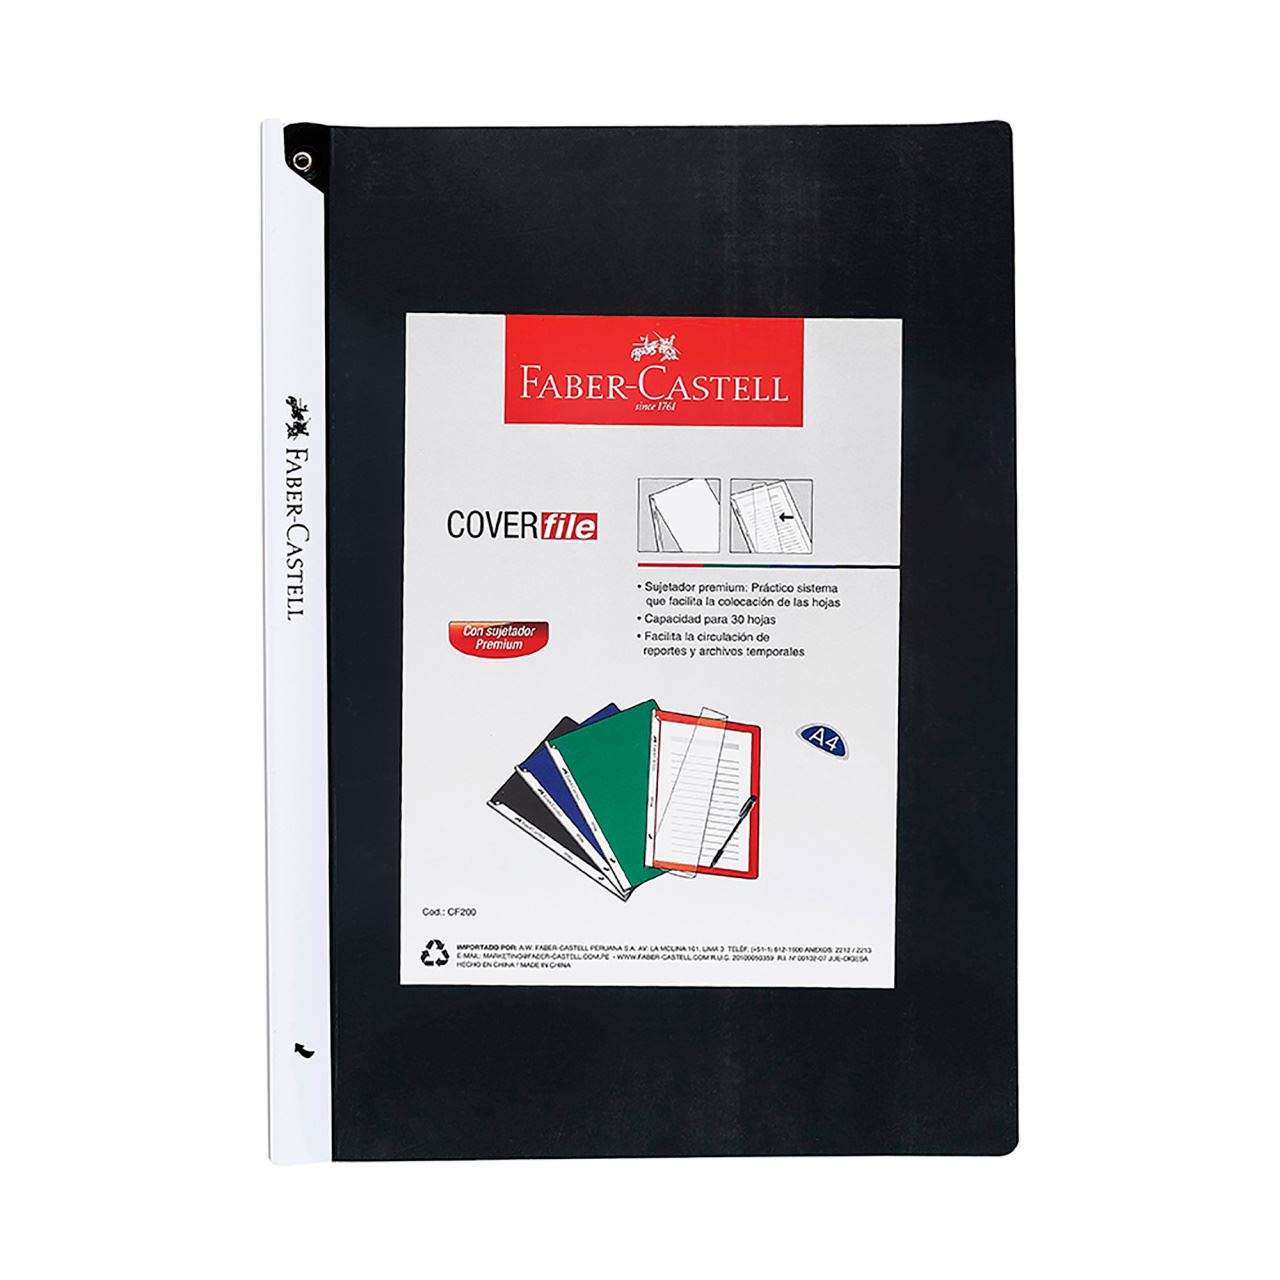 Faber-Castell - Sujetador de docuemtnos Cover file negro